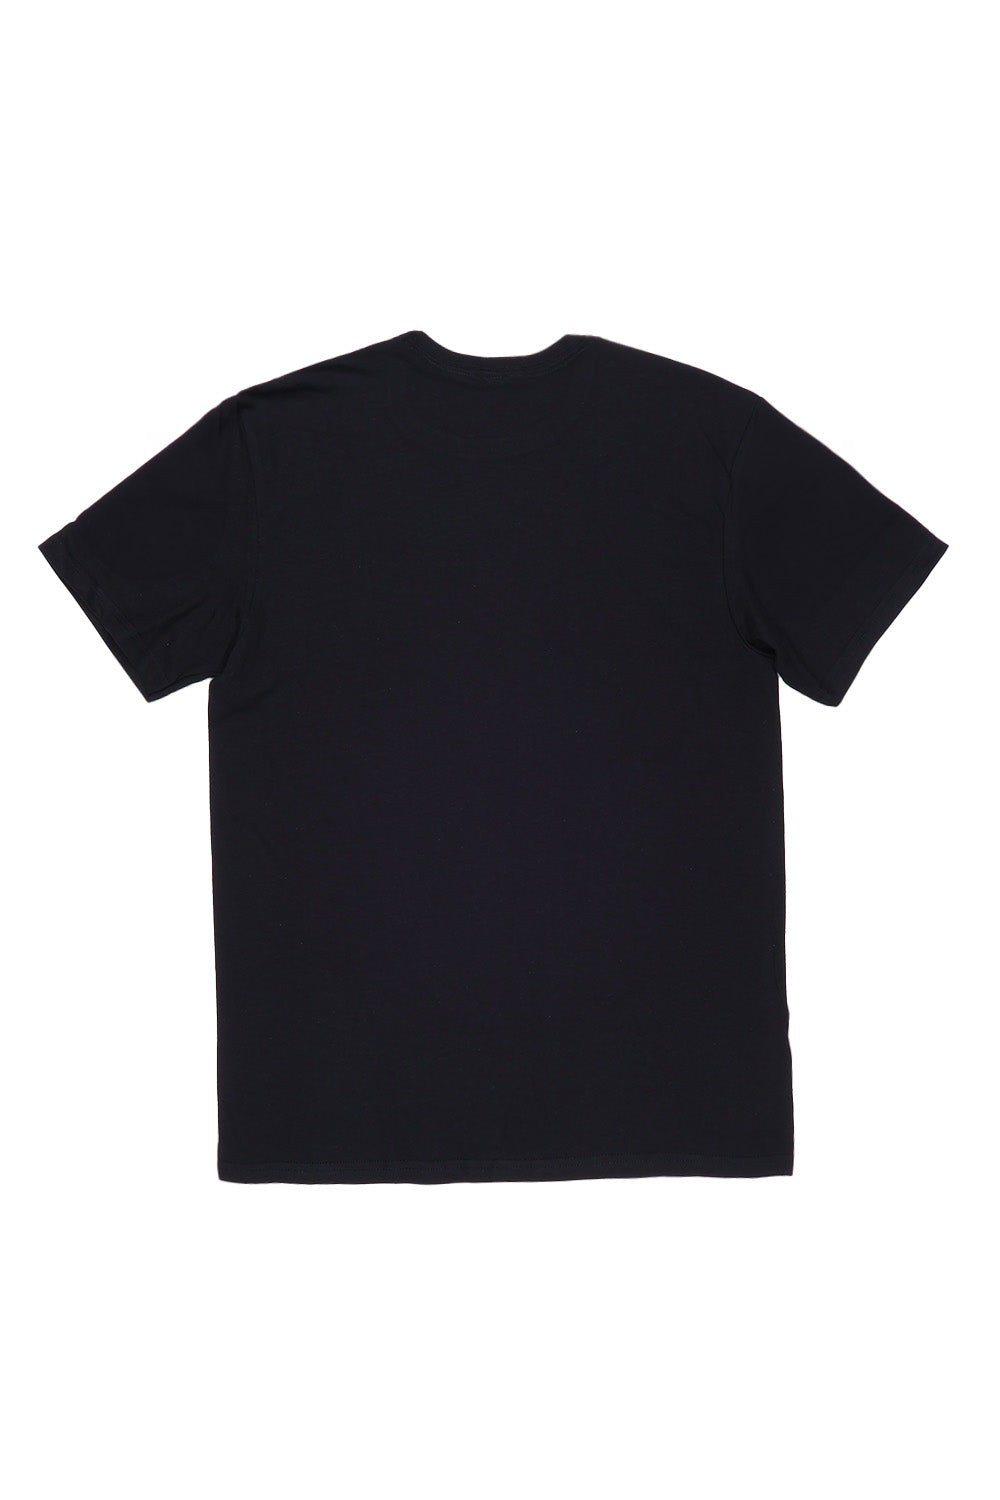 Beverly Hills T-Shirt in Black (Custom Packs)